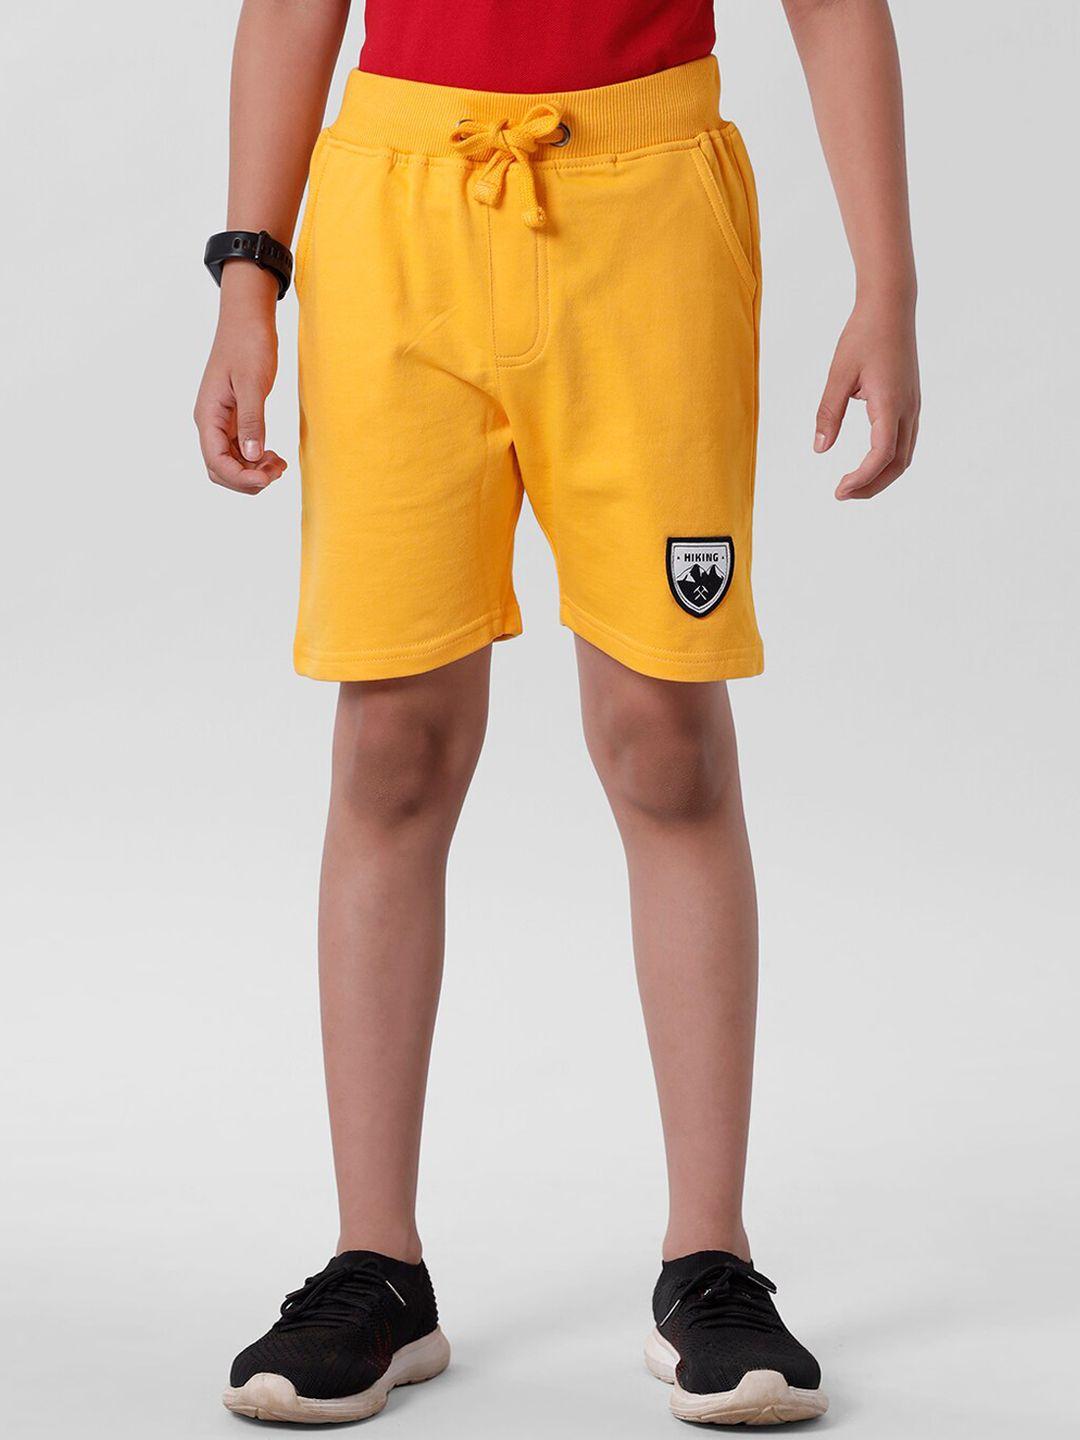 pipin boys yellow shorts